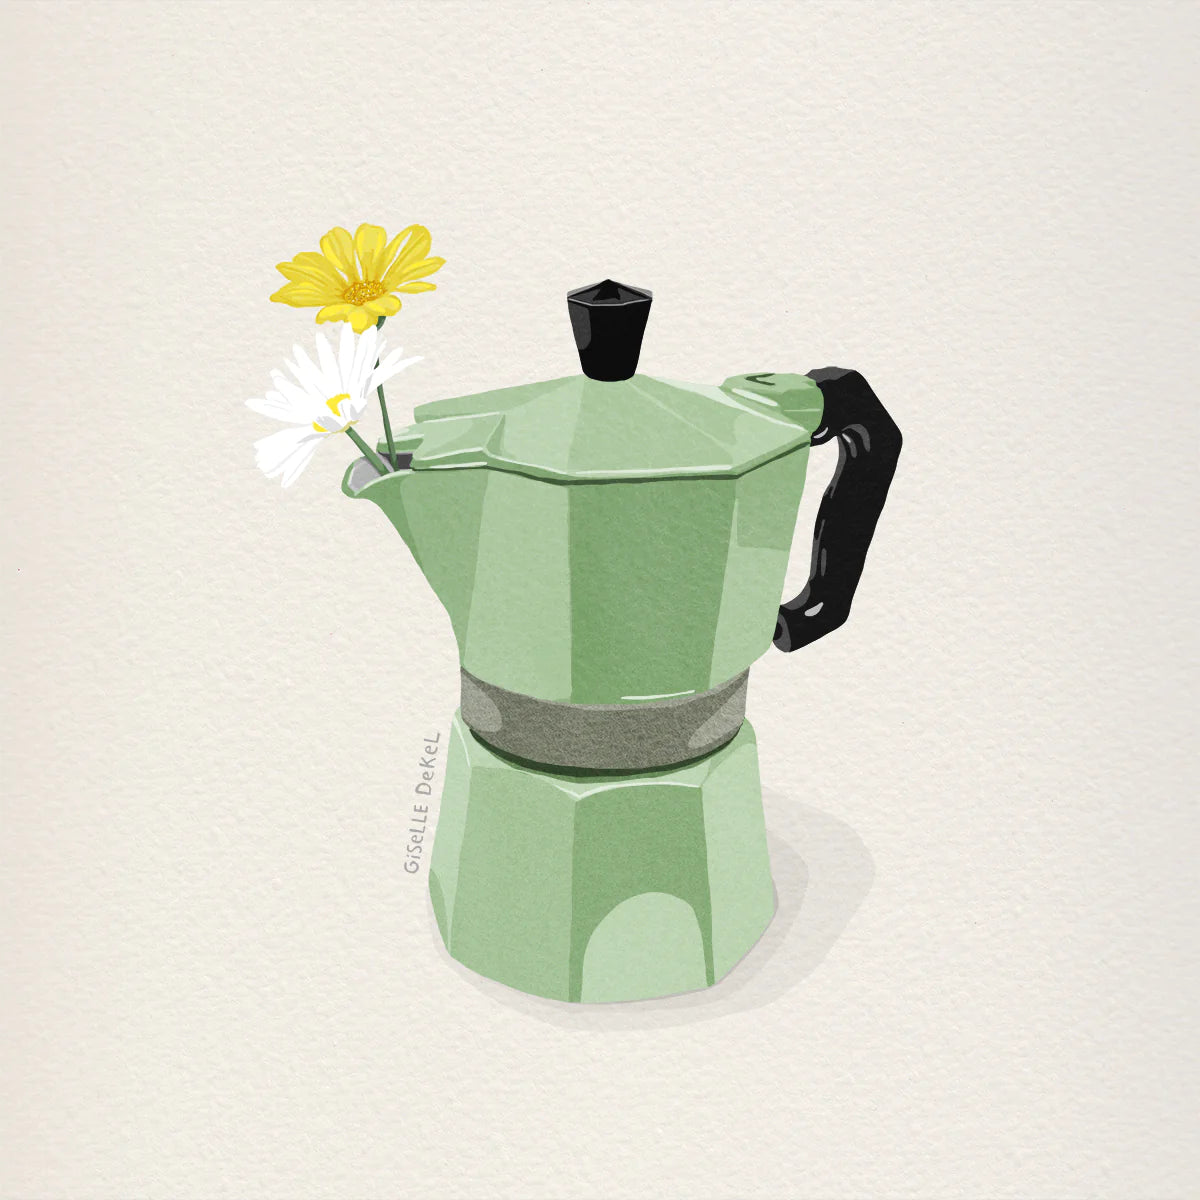 הדפס -"קנקן קפה לפרח"